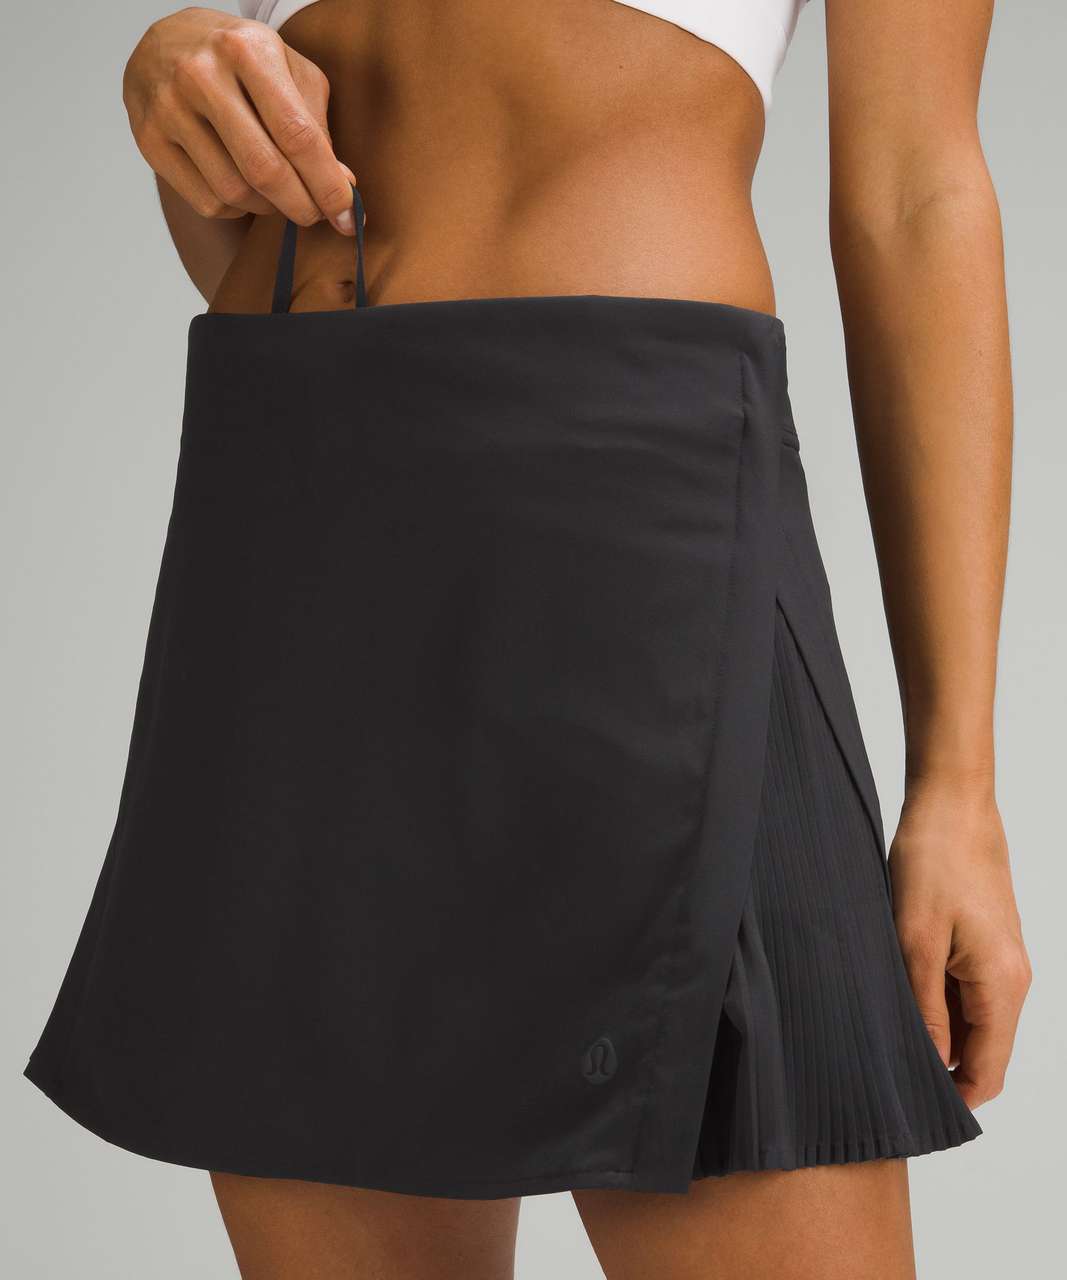 Lululemon Peek Pleat High-Rise Tennis Skirt - Black